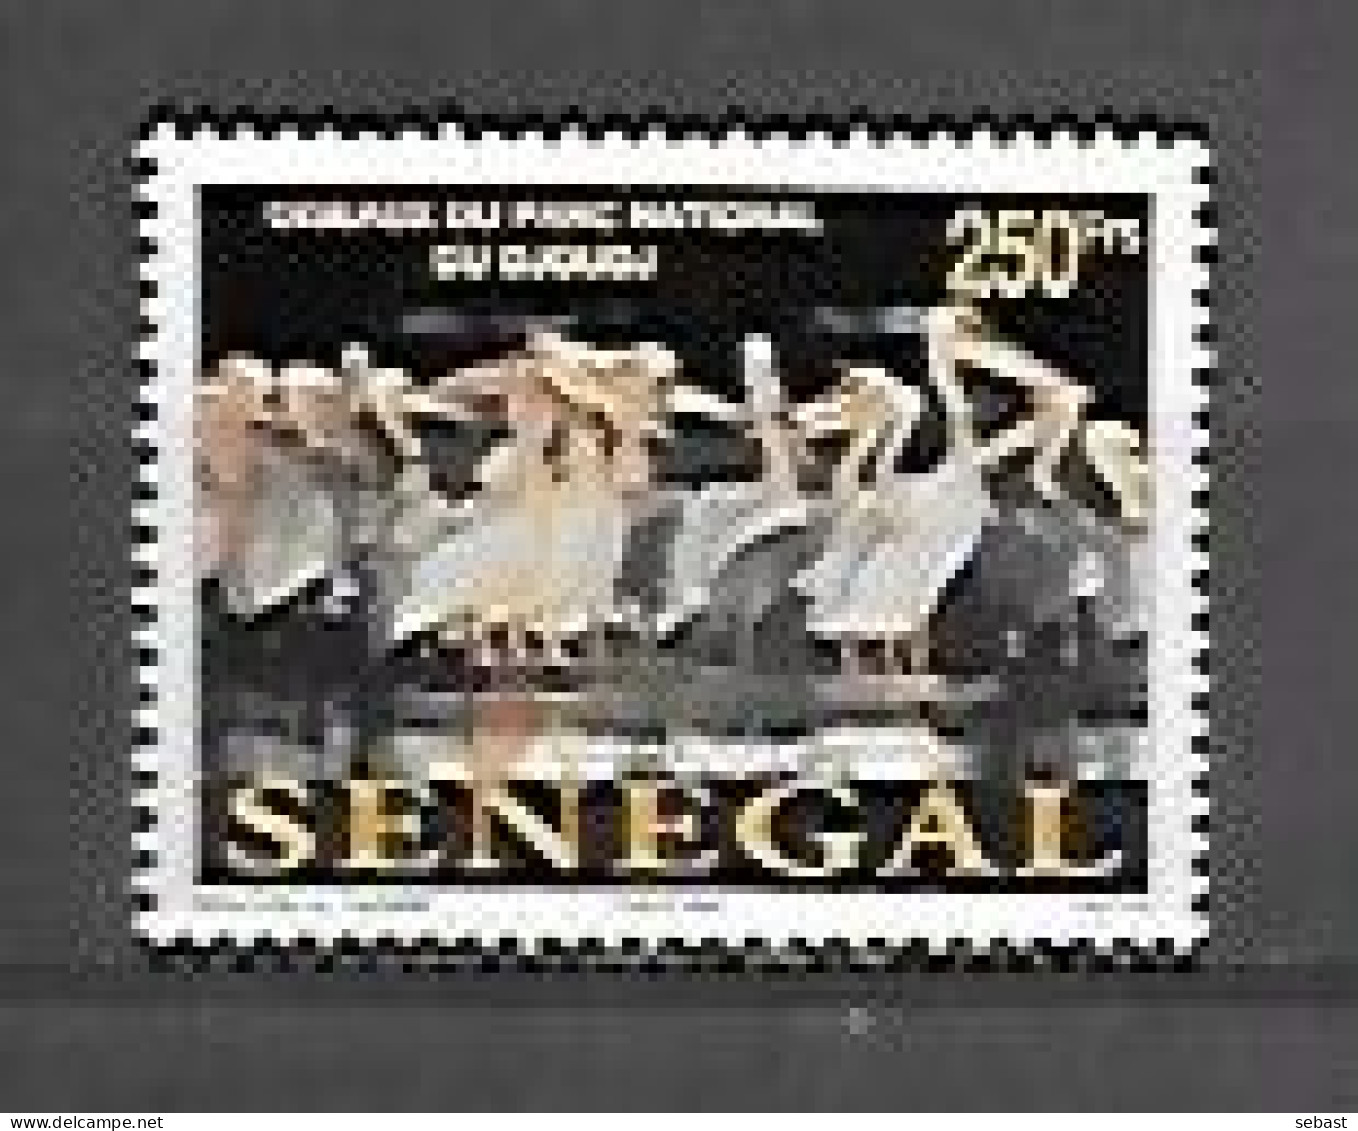 TIMBRE OBLITERE DU SENEGAL DE 2002 N° MICHEL 2003 - Sénégal (1960-...)